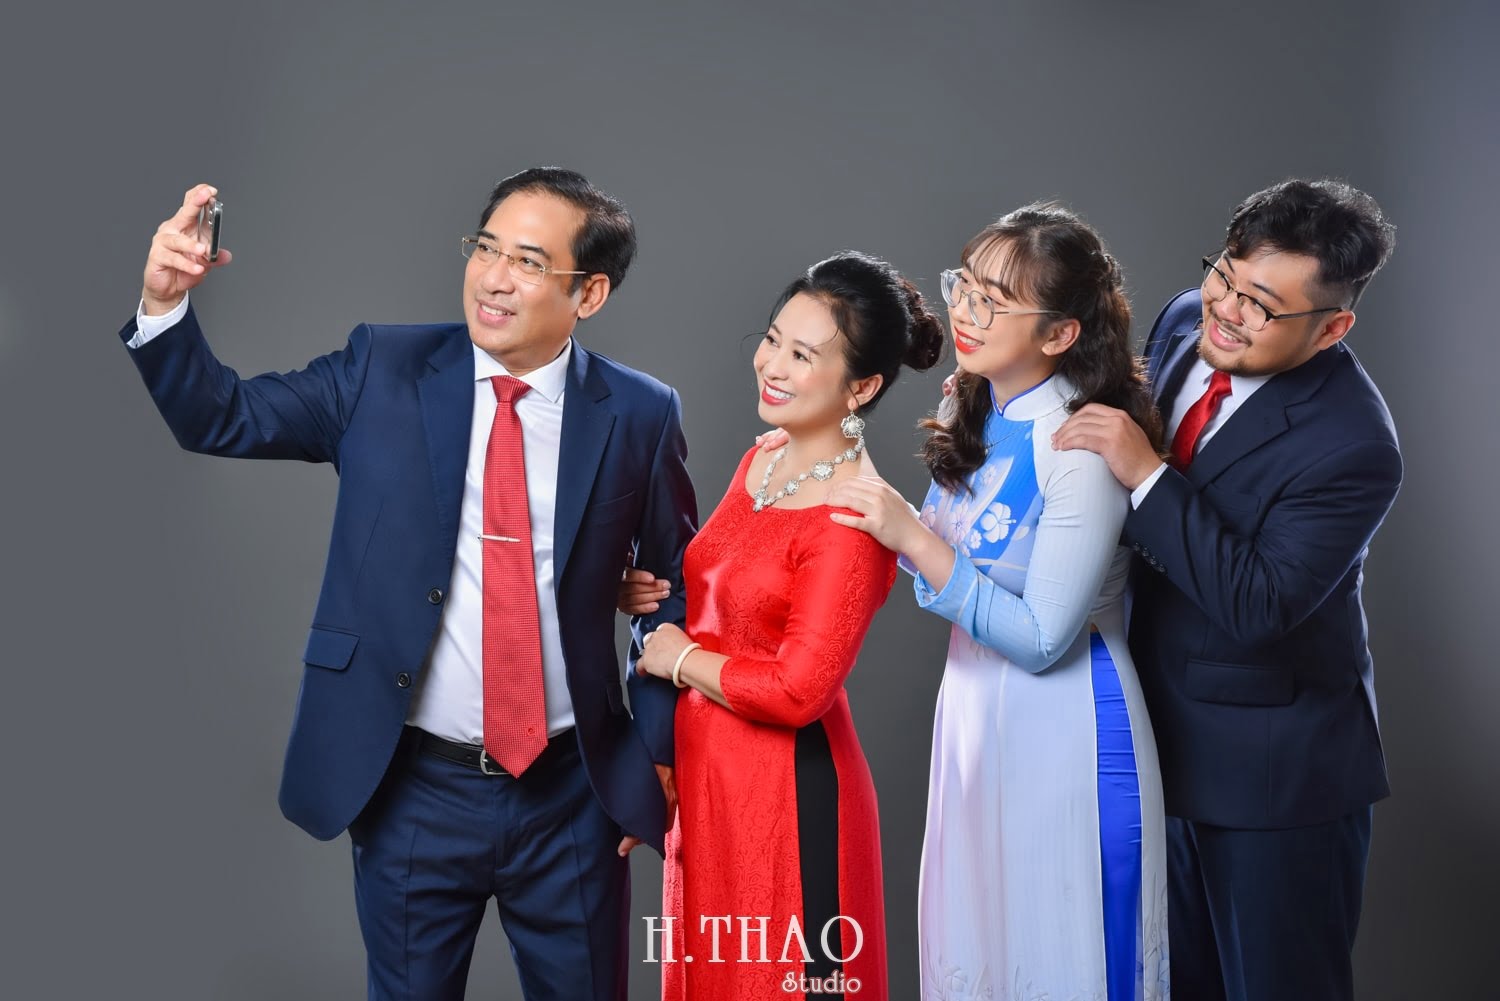 Anh gia dinh 4 nguoi 3 min - 45 cách tạo dáng chụp ảnh gia đình 4 người ấn tượng nhất - HThao Studio